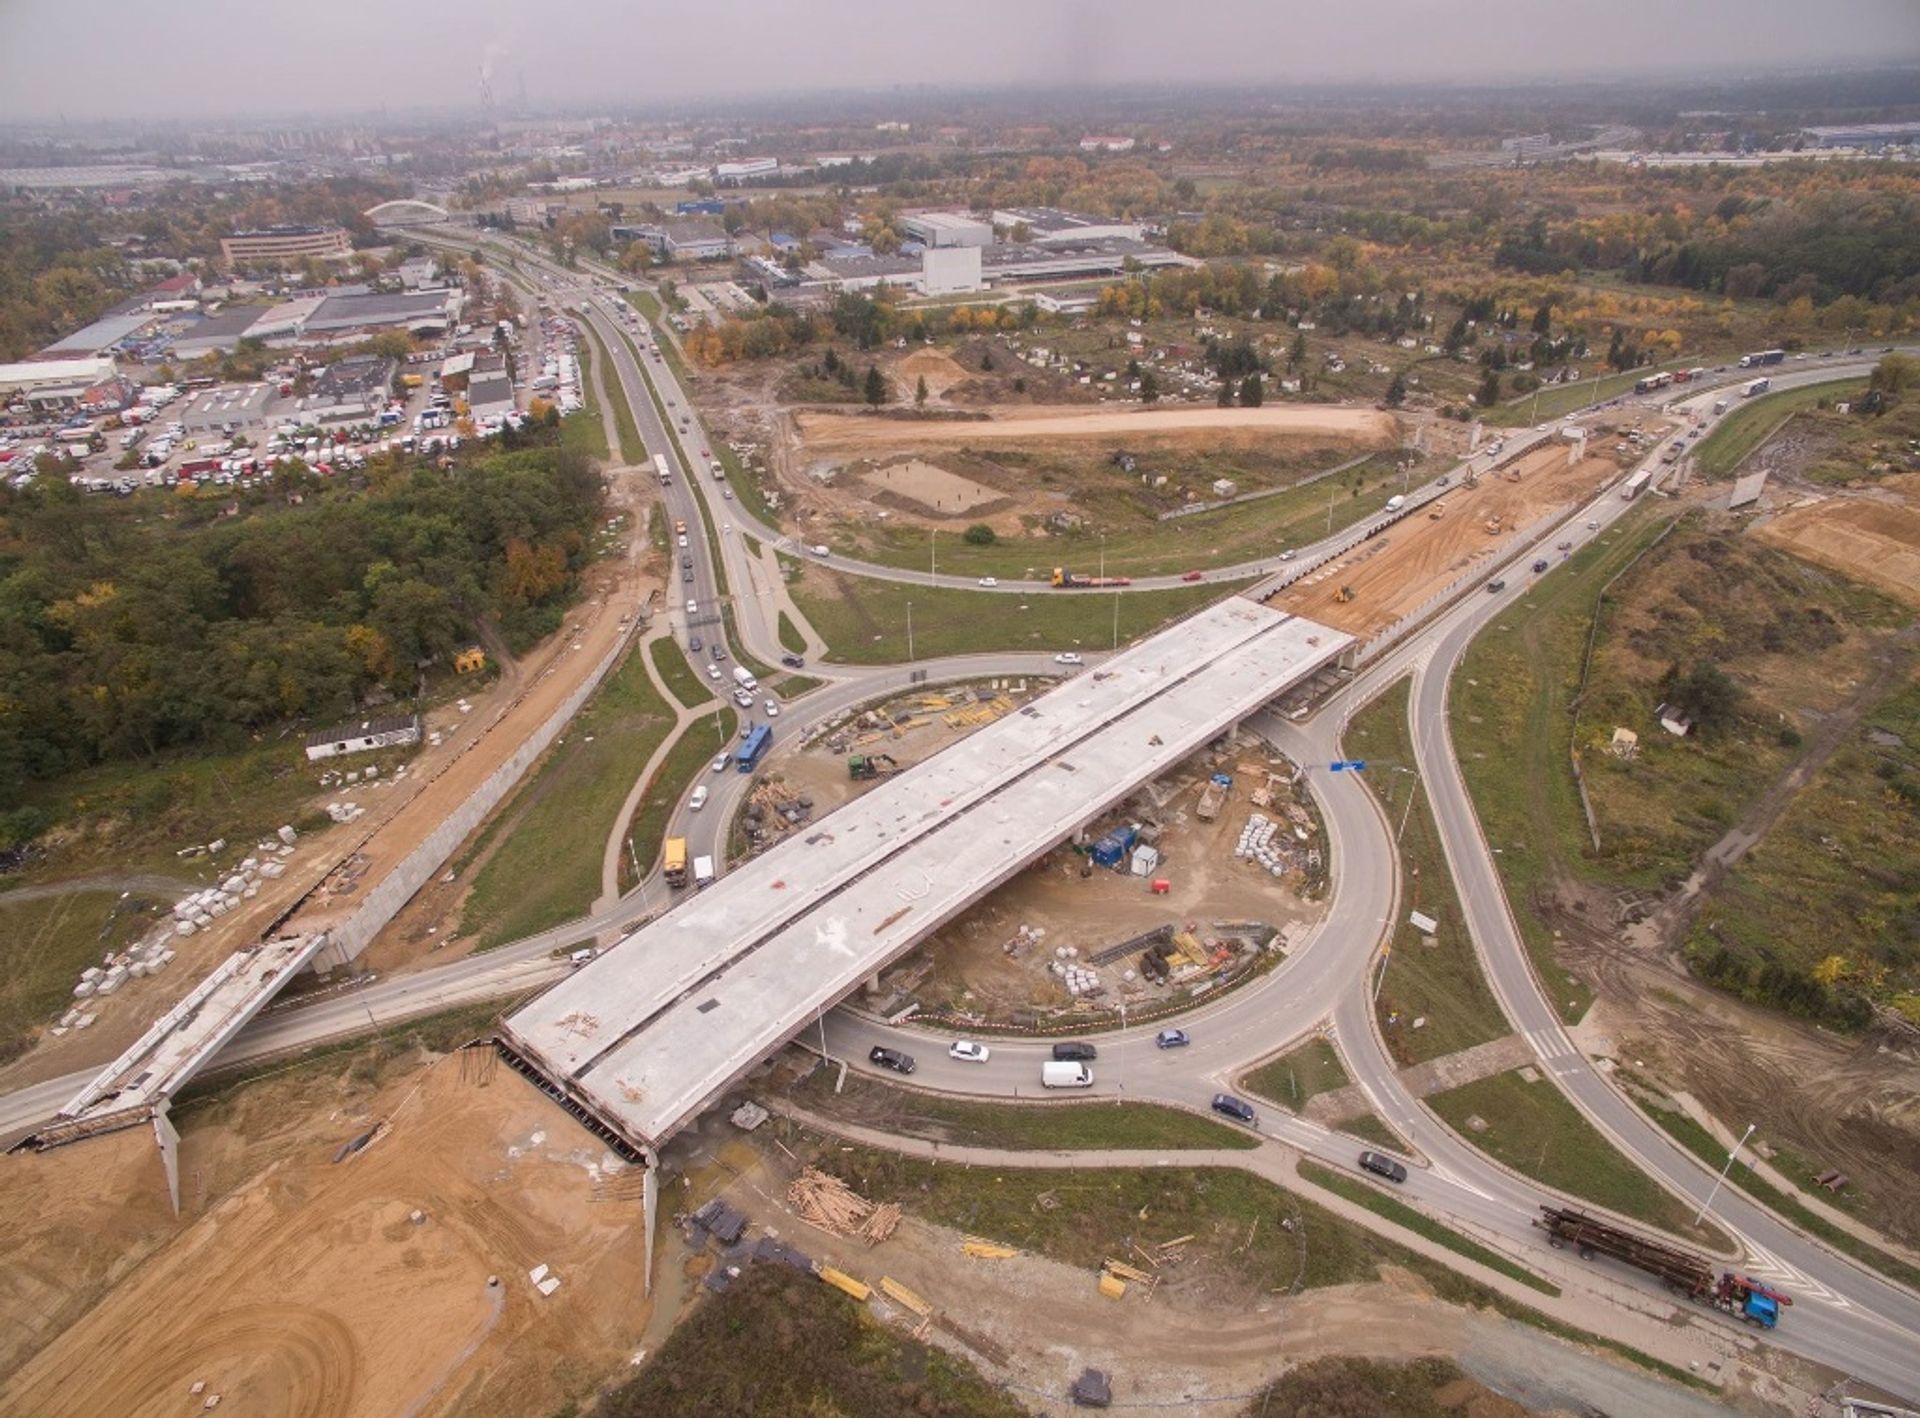  Trwa budowa jednego z największych węzłów drogowych w Polsce 